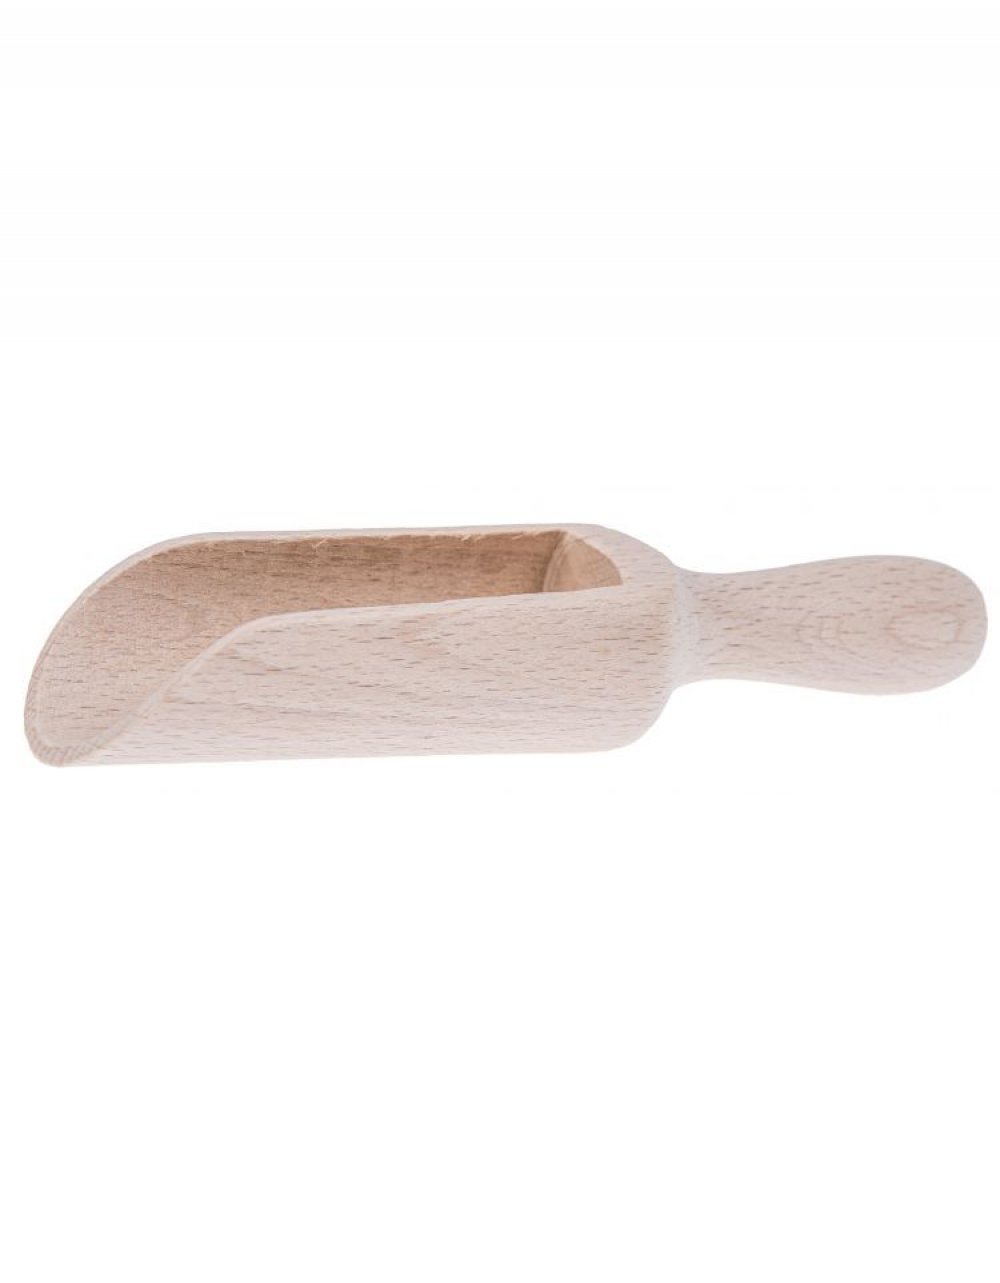 Dřevěná lopatka na koření 2,5x8,5 cm